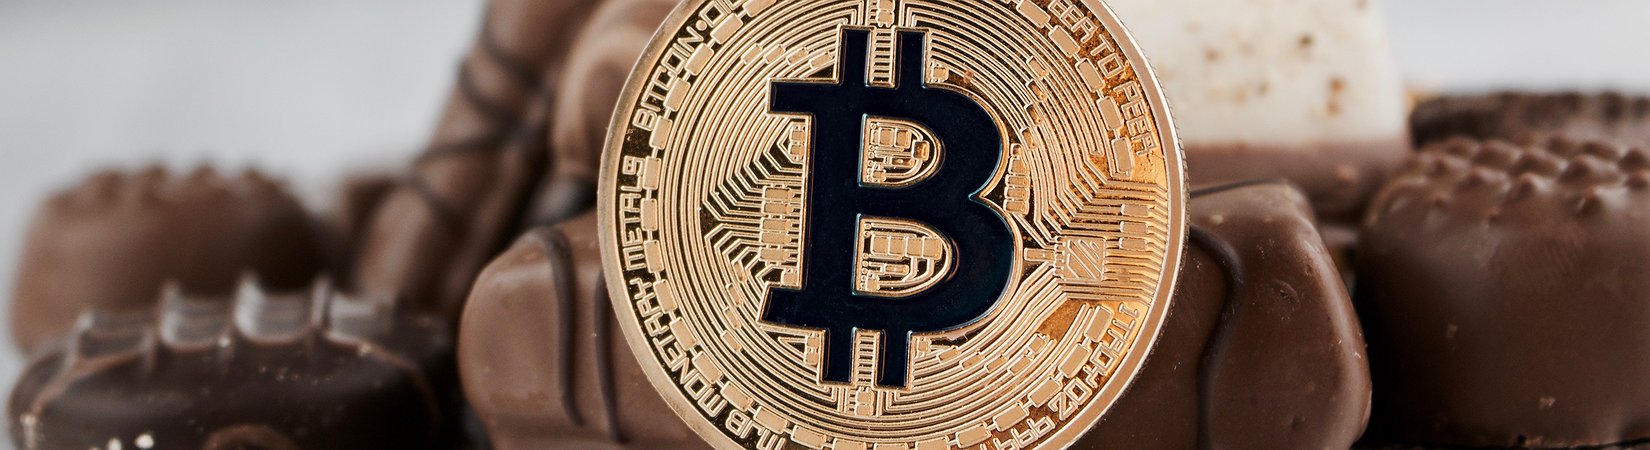 Как хранится bitcoin ripple цена в долларах на сегодня